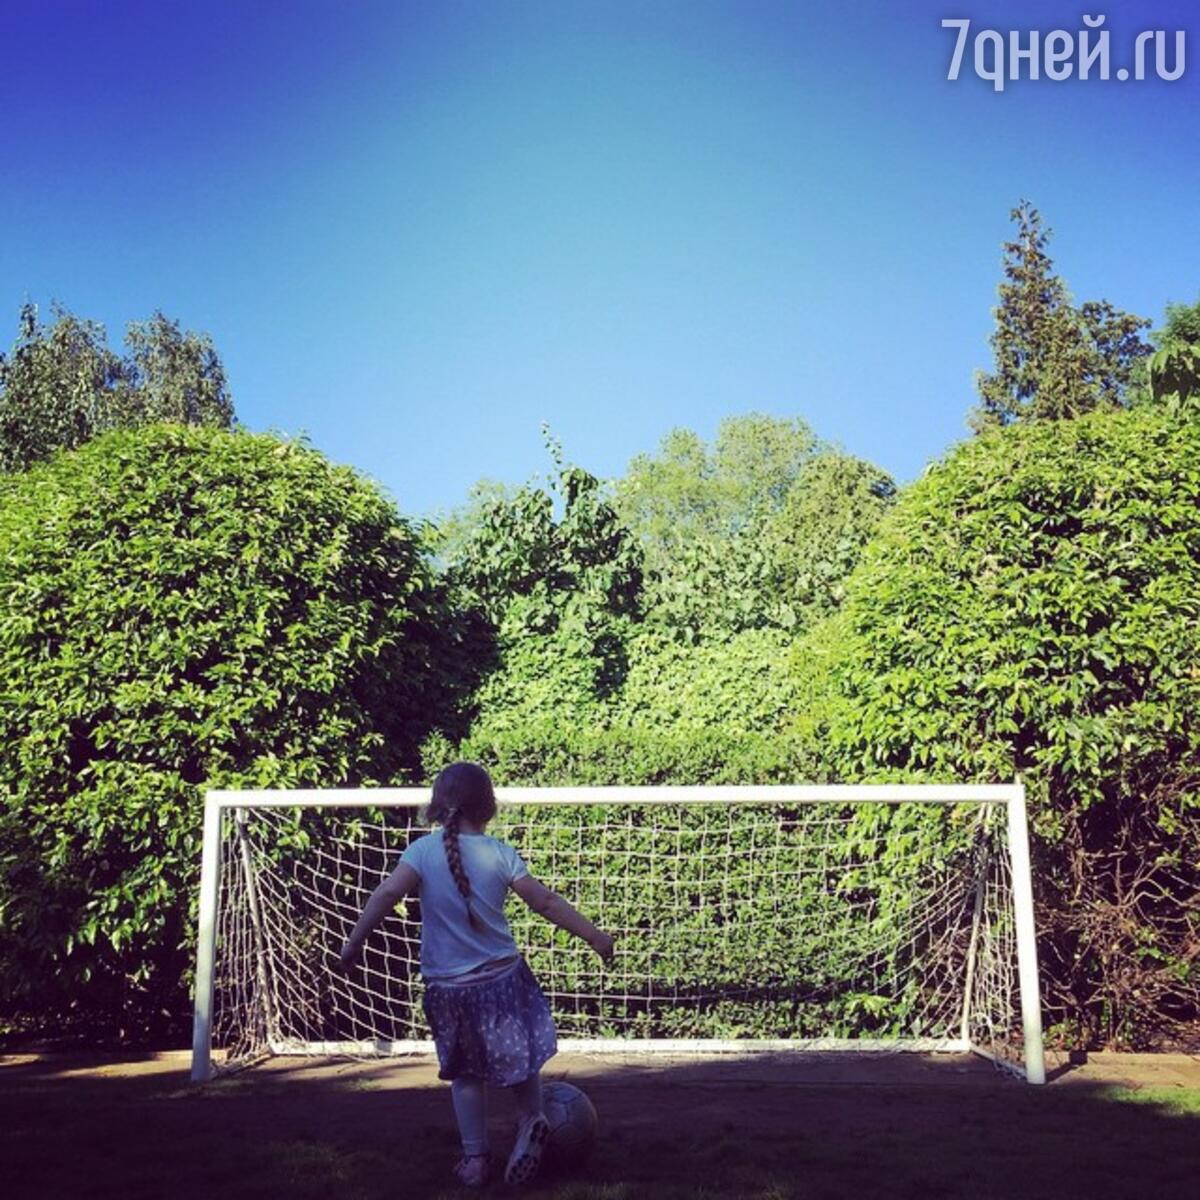 Дочь Бекхэмов успешно играет в футбол - 7Дней.ру